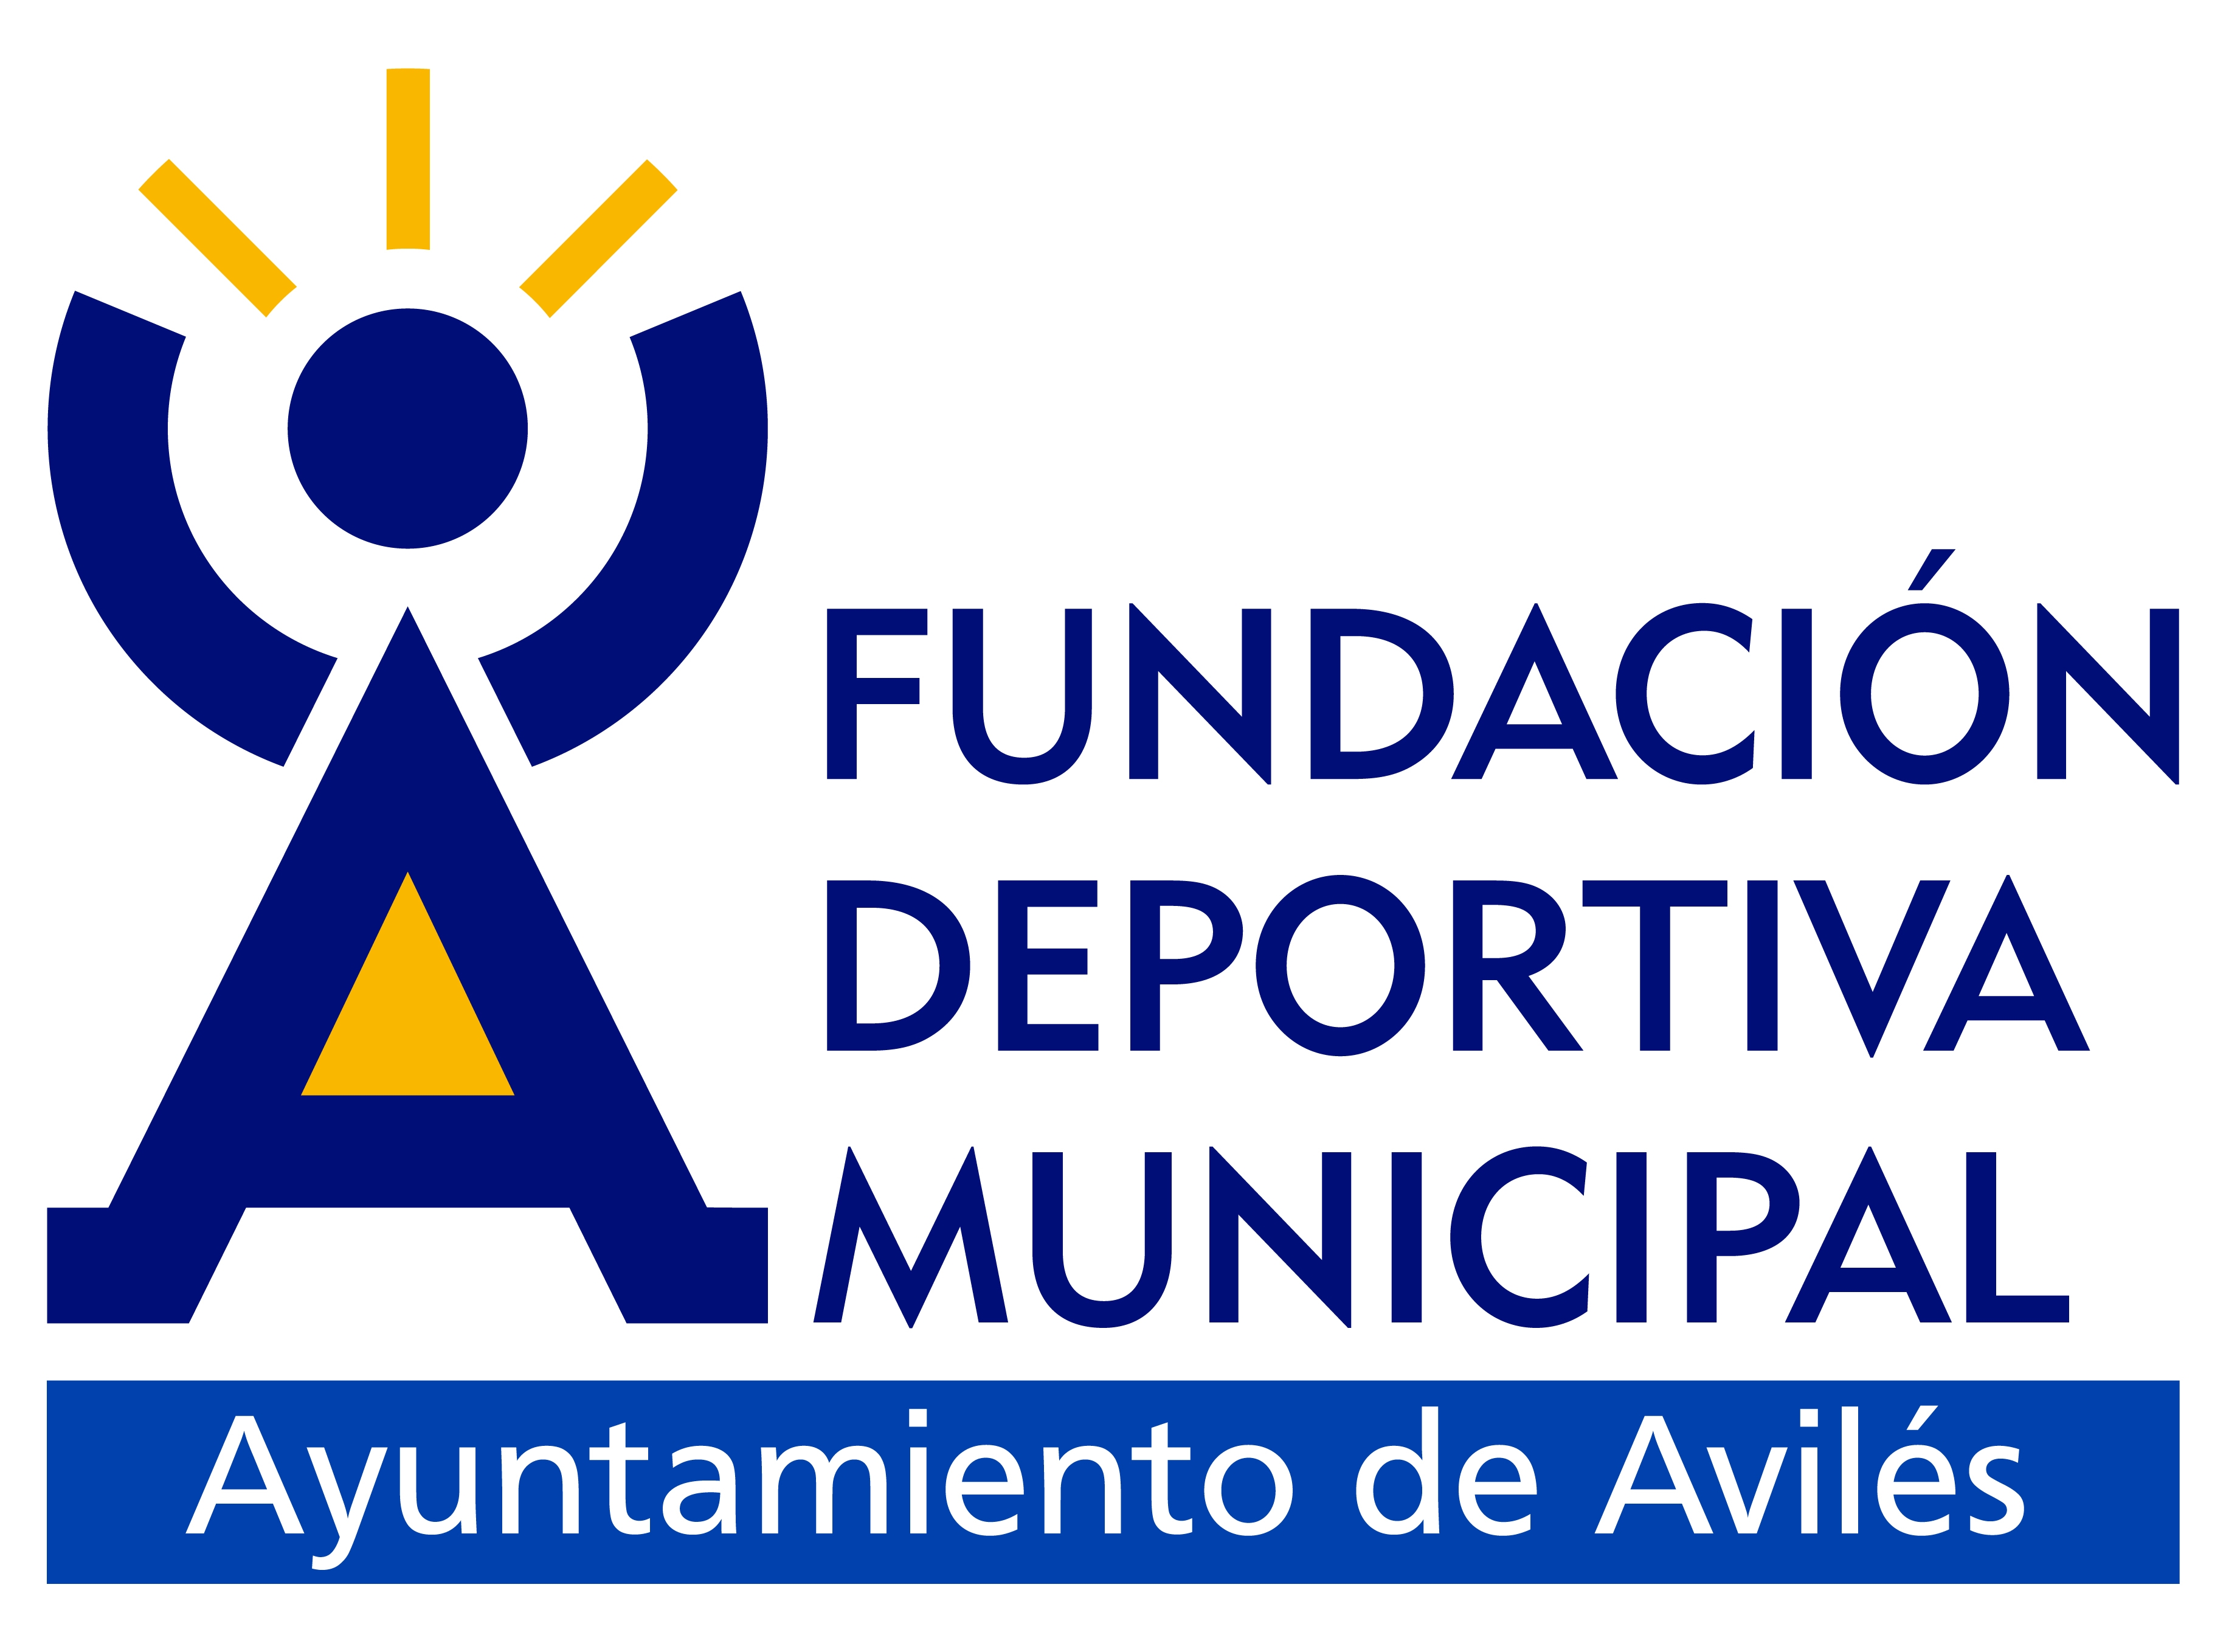 La Fundación Deportiva Municipal ofrece 27 actividades para el curso 2019/2020